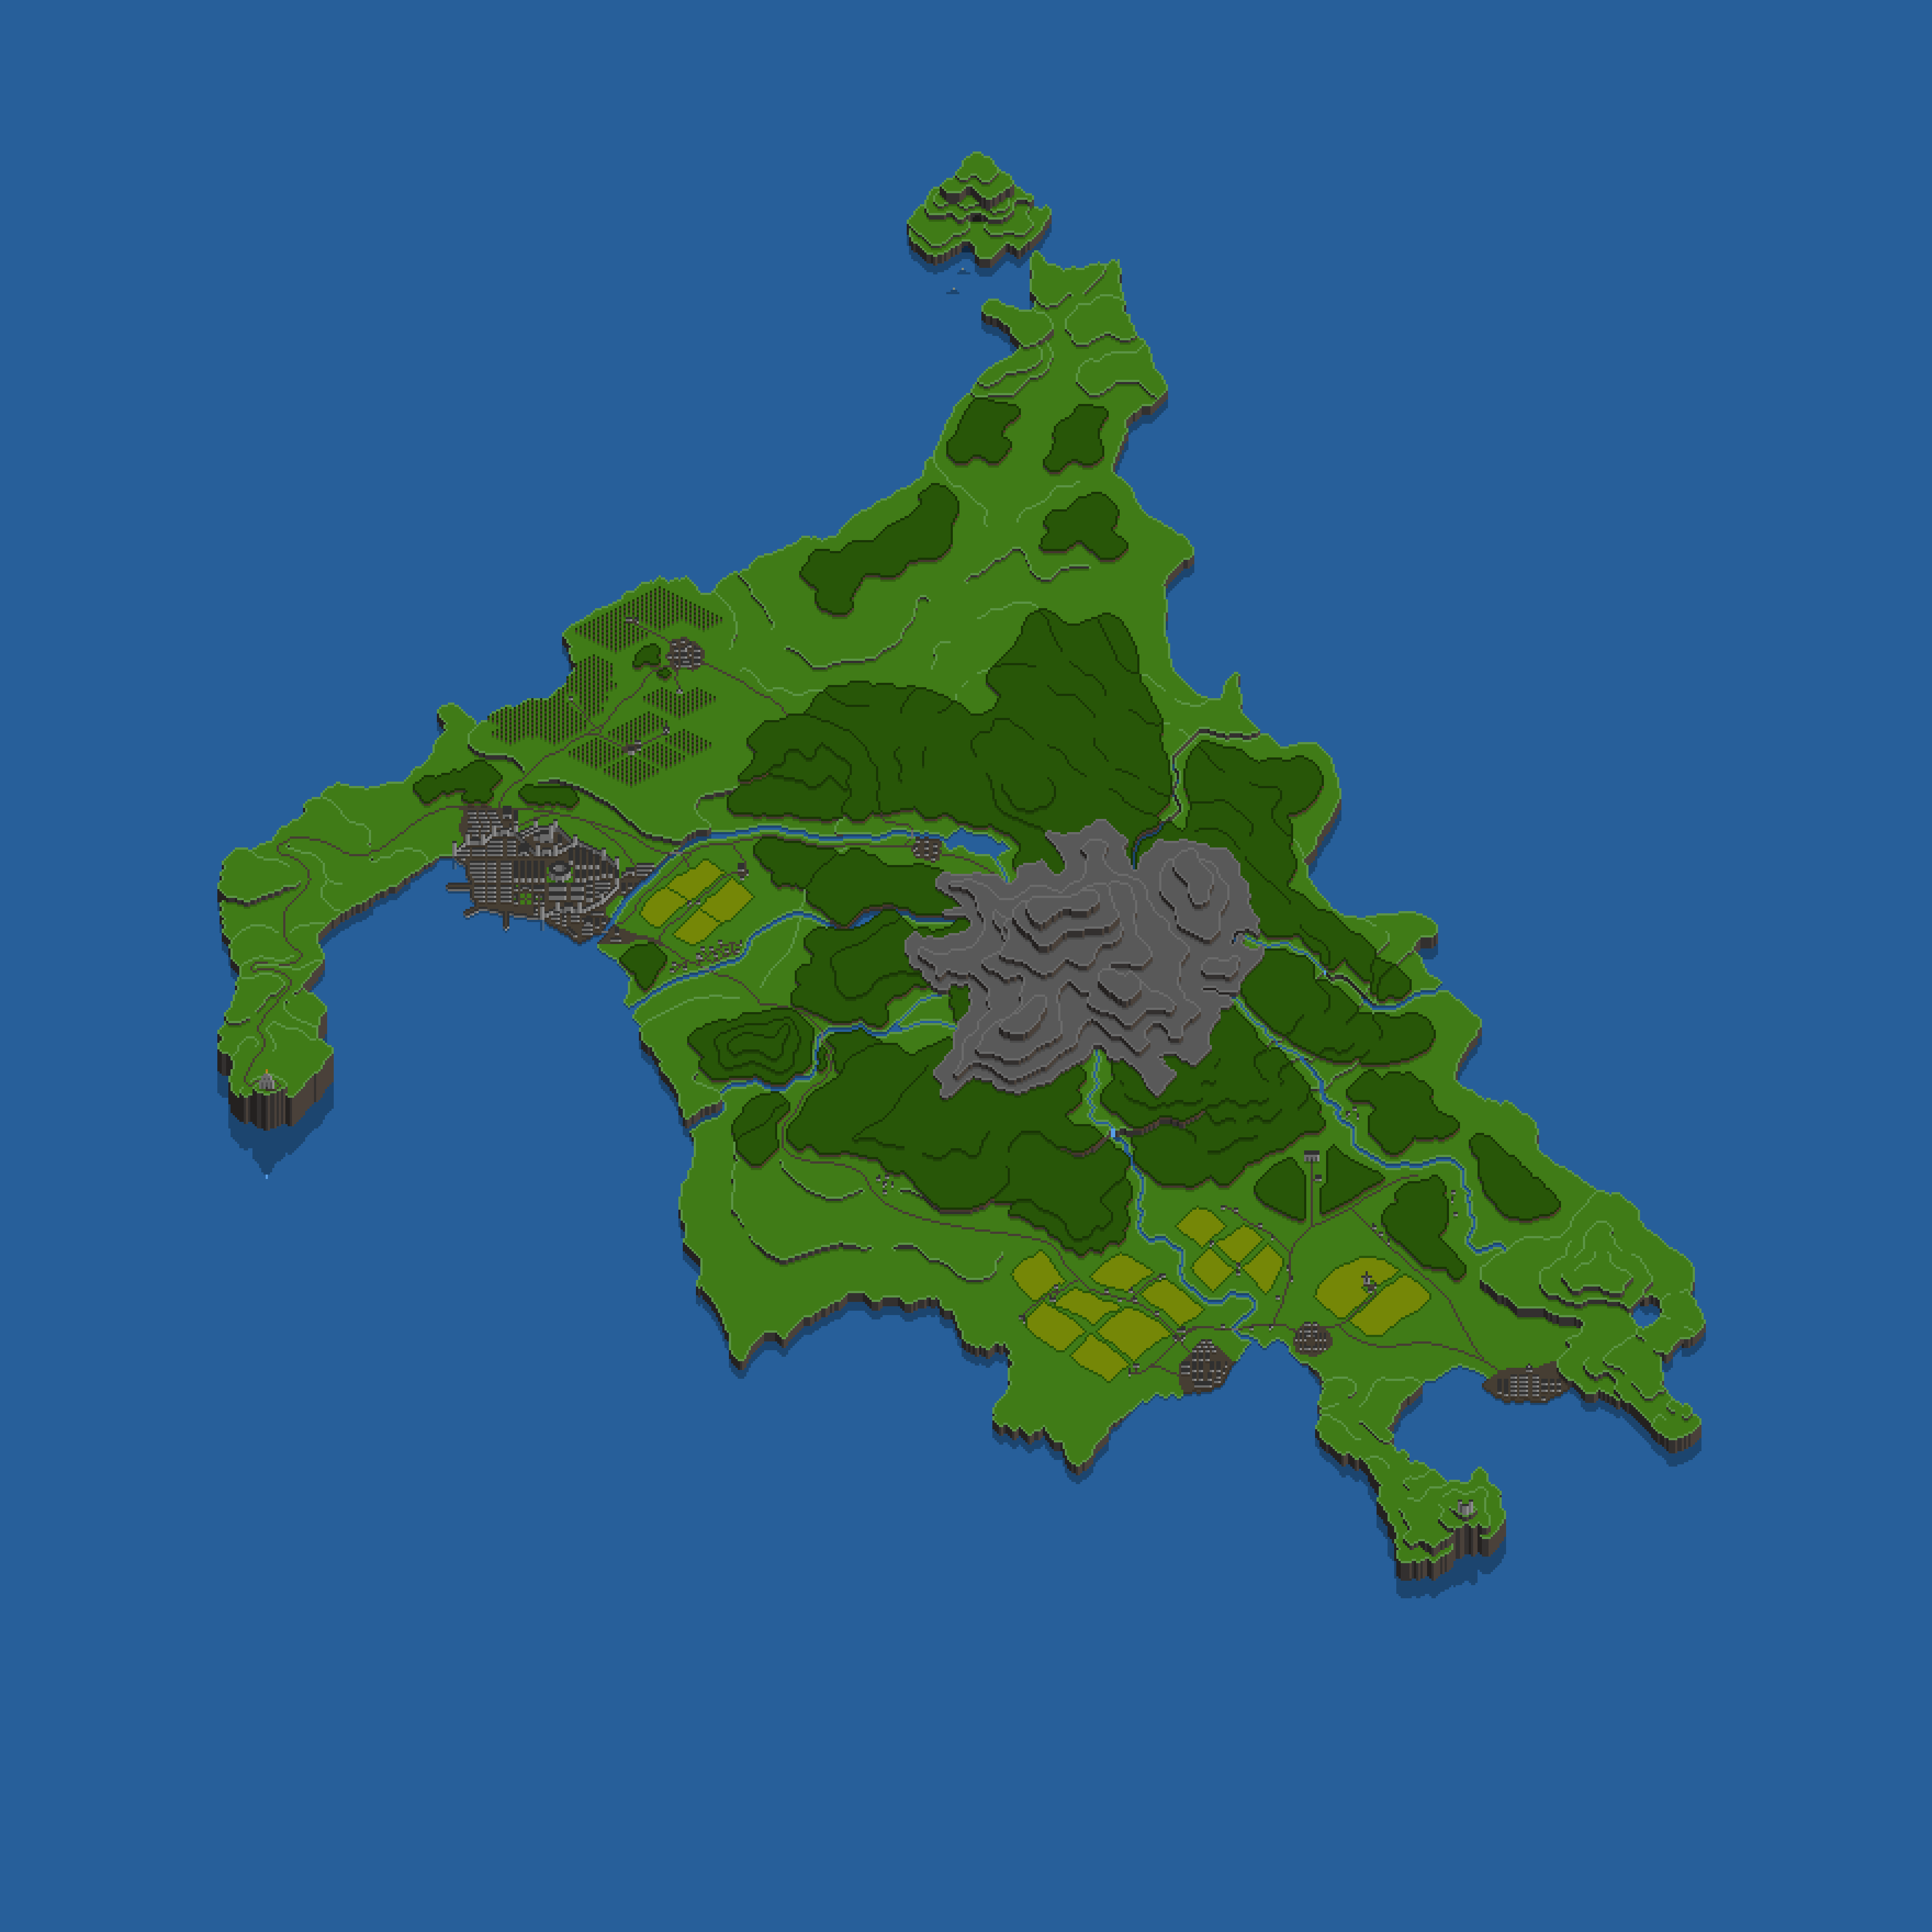 Isle of Appley Base Map Image